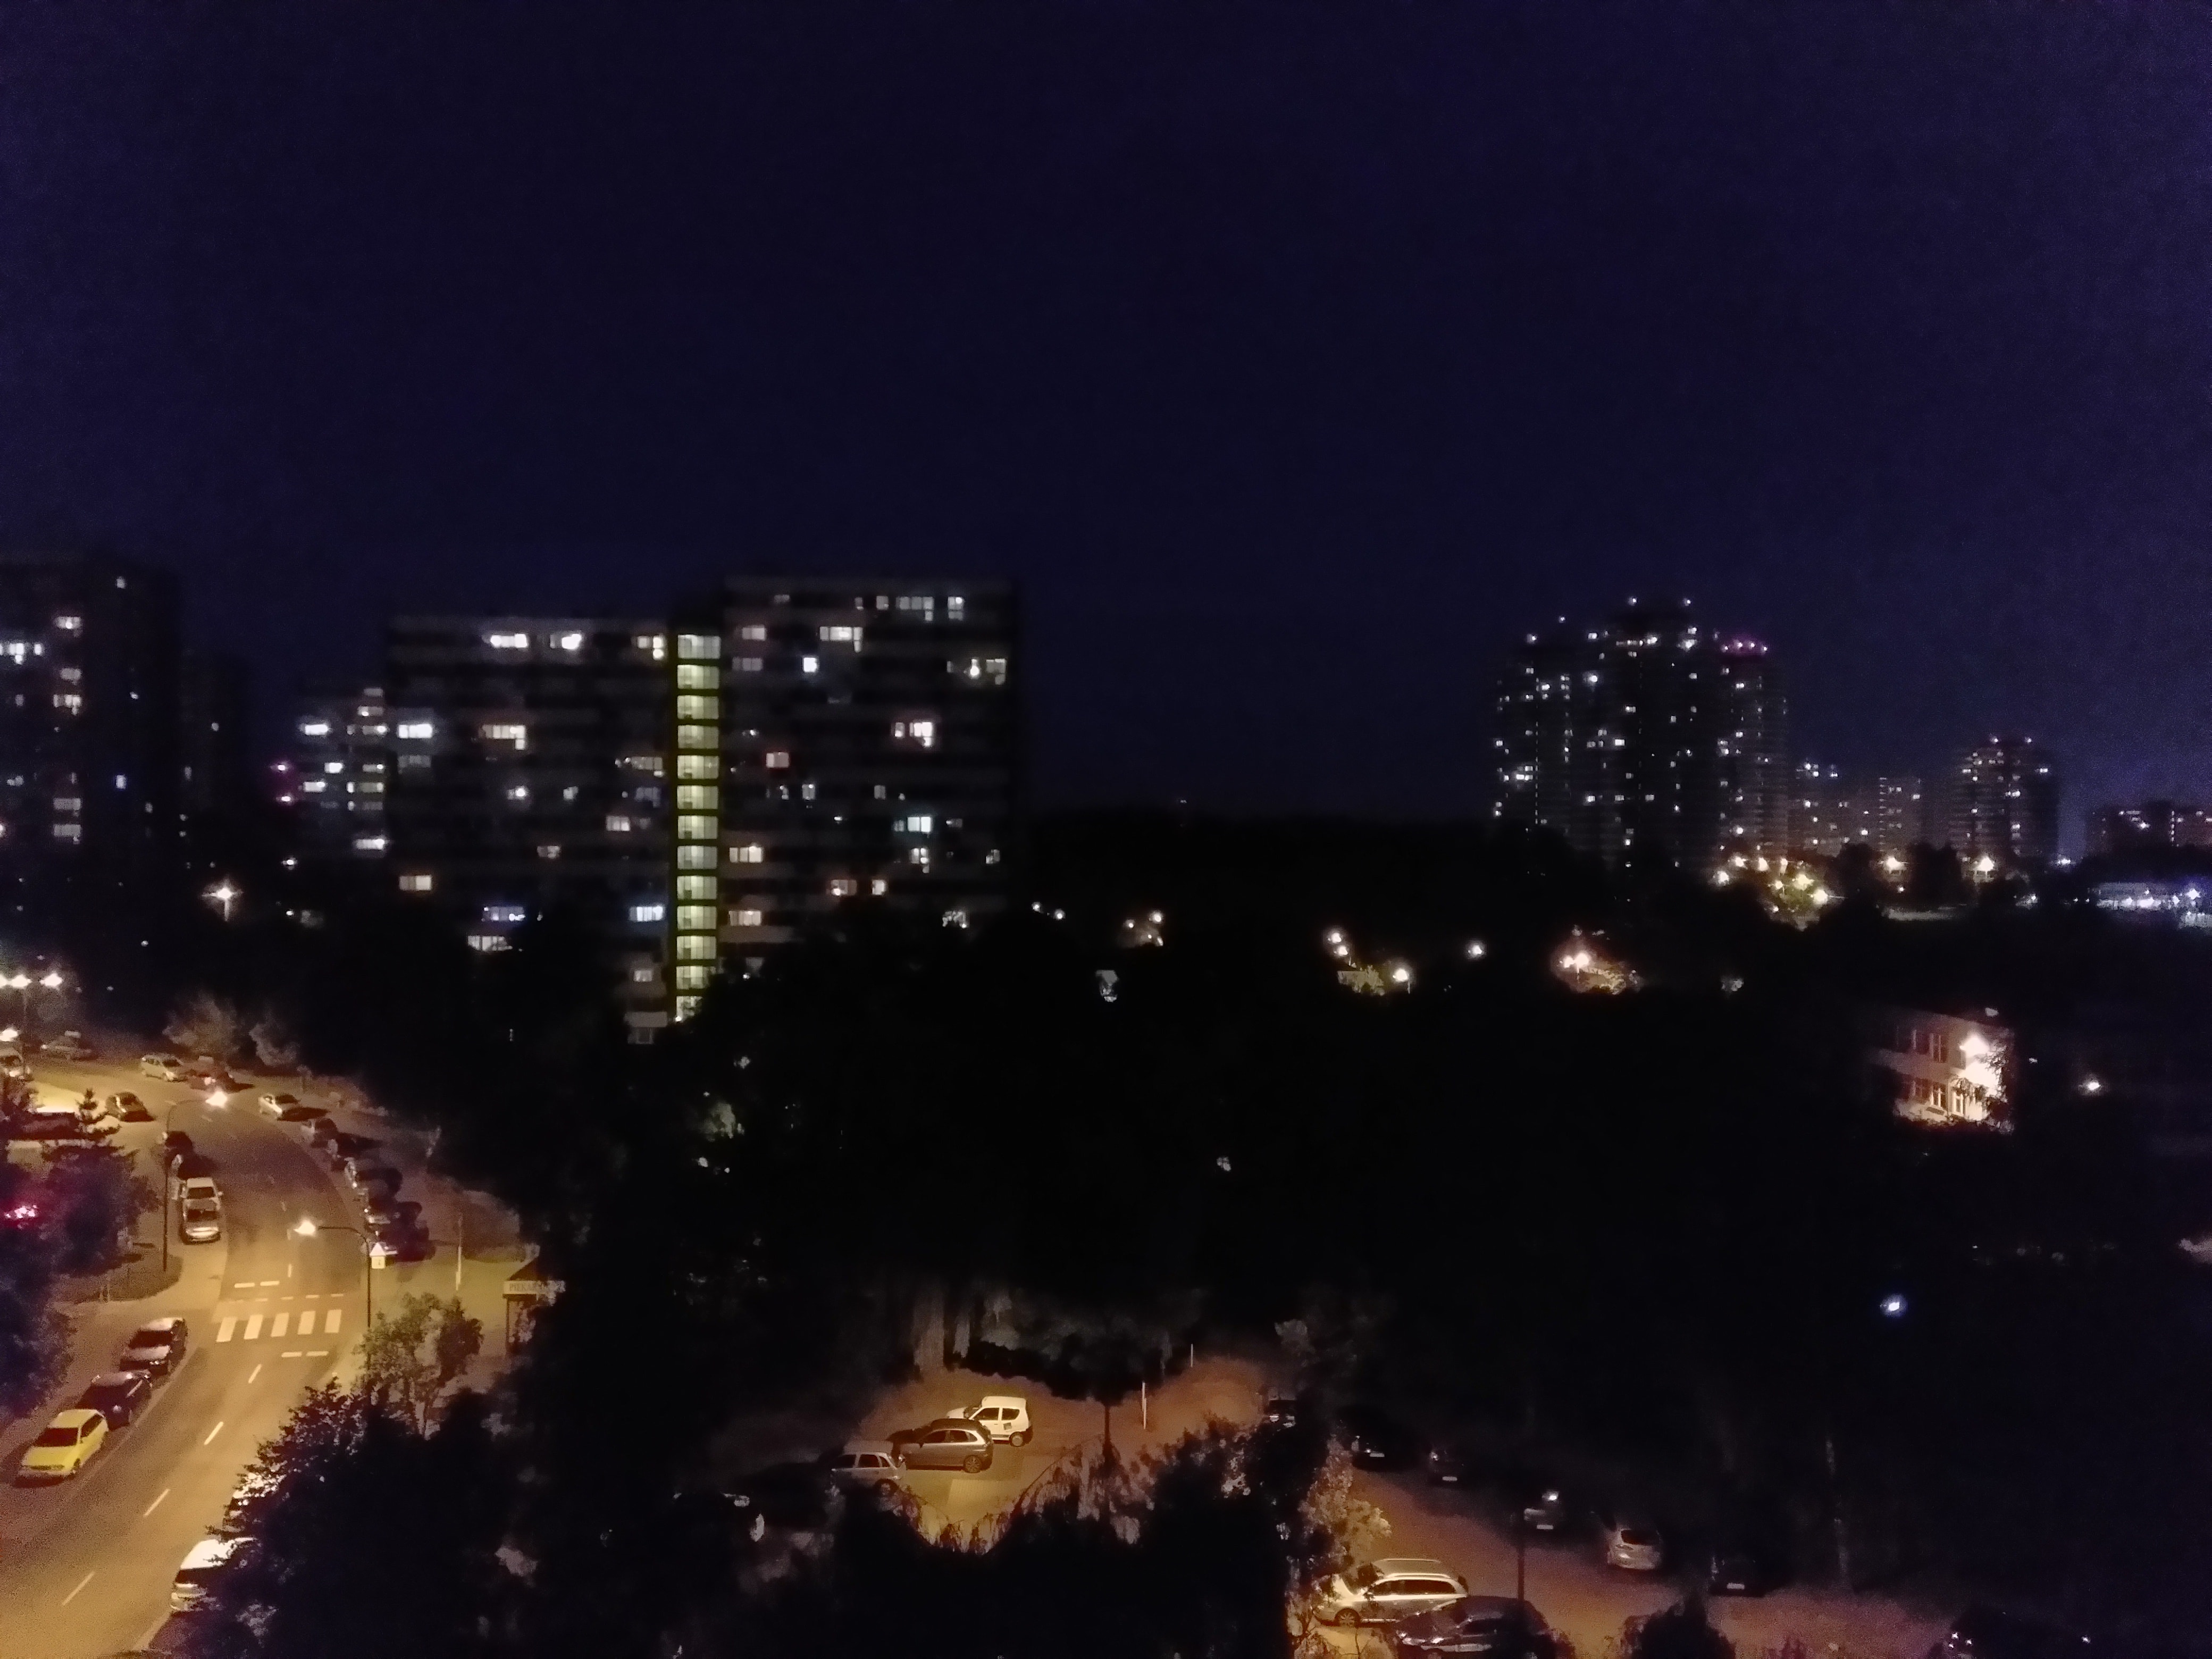 Zdjęcia nocne - Wiko WiM Lite